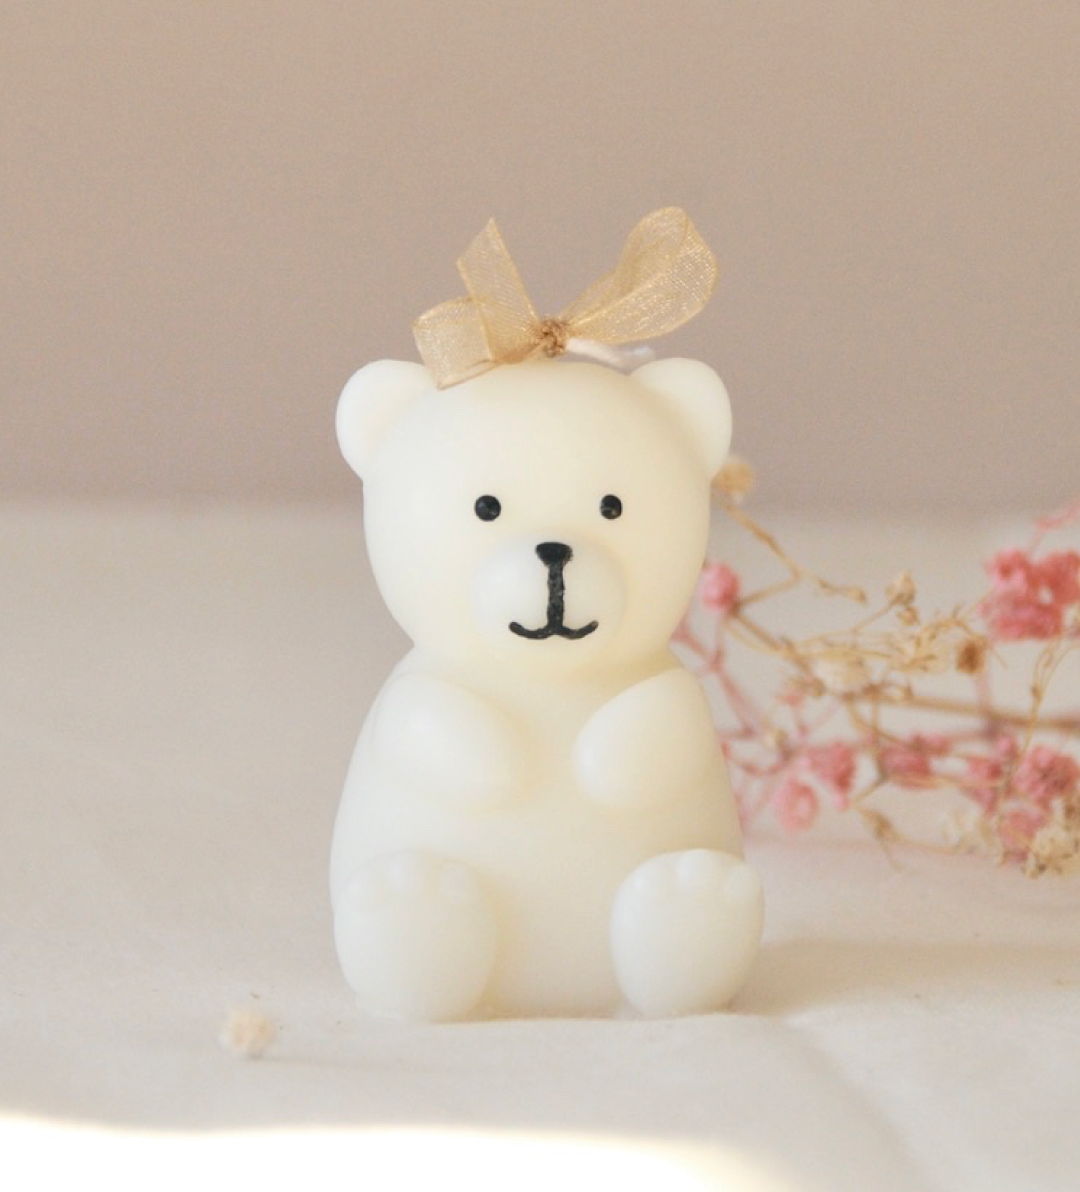 Teddy Bear Candle – Monde de Lumiere